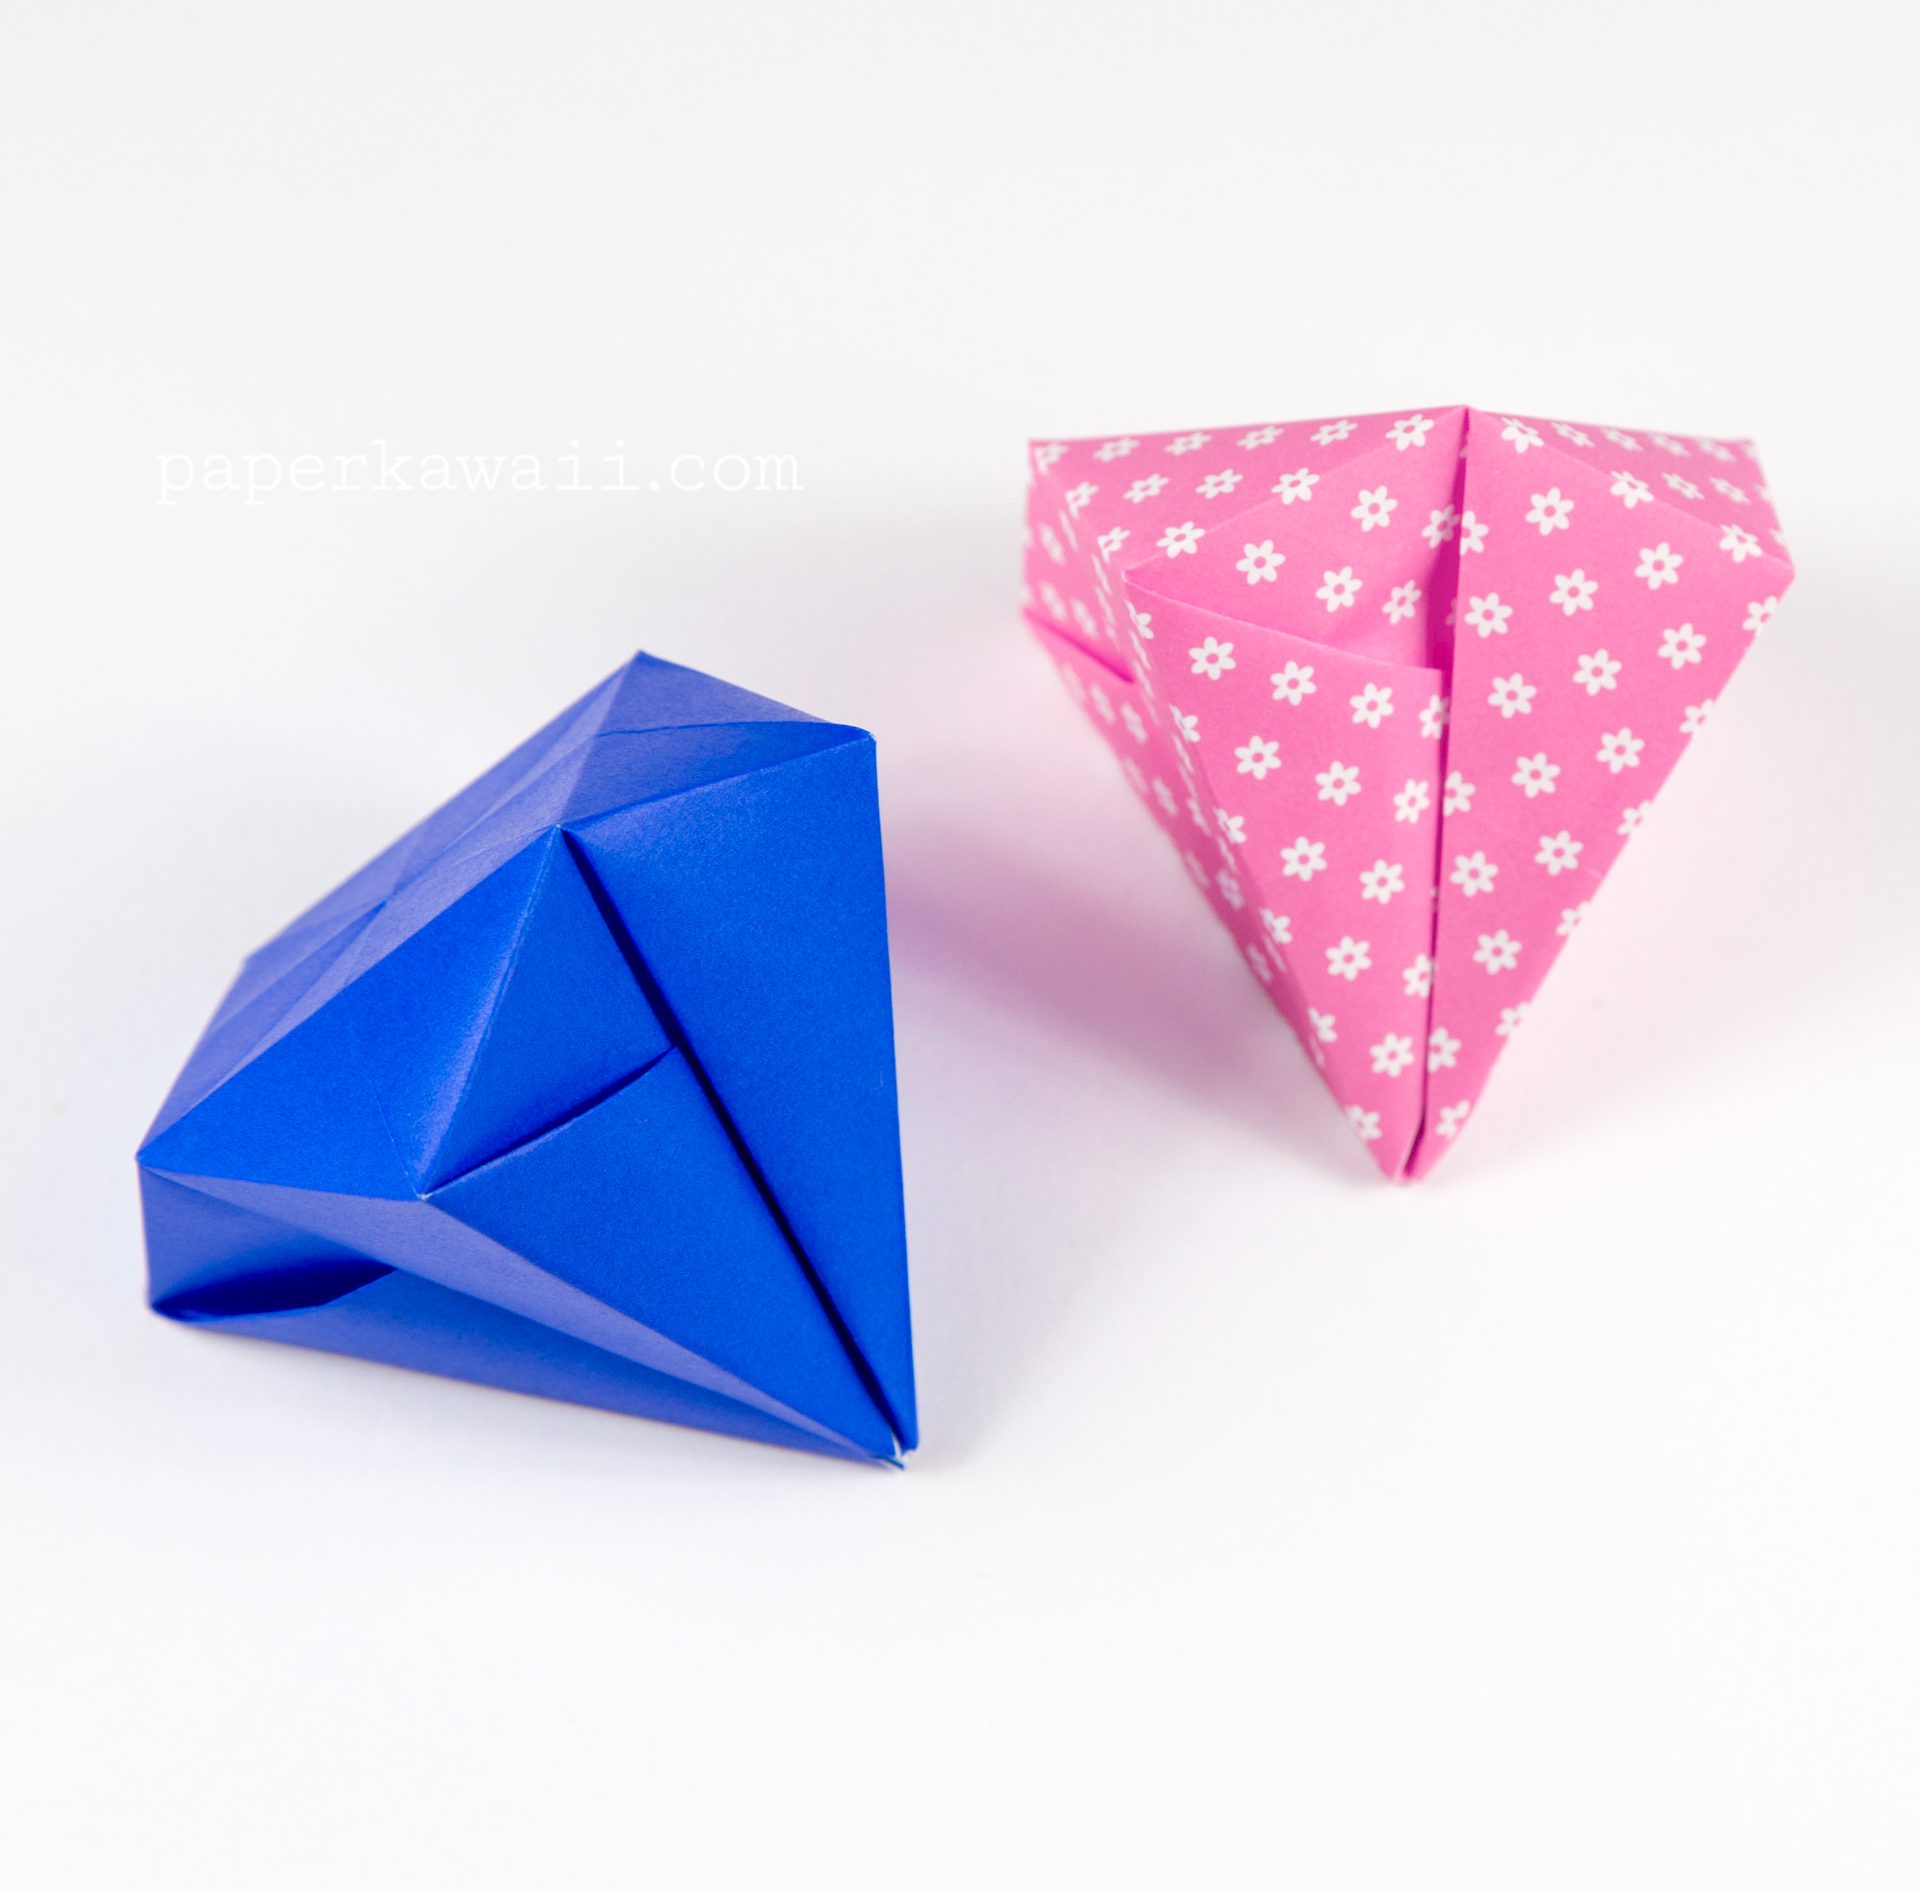 Origami Square Diamond Tutorial Paper Kawaii 02